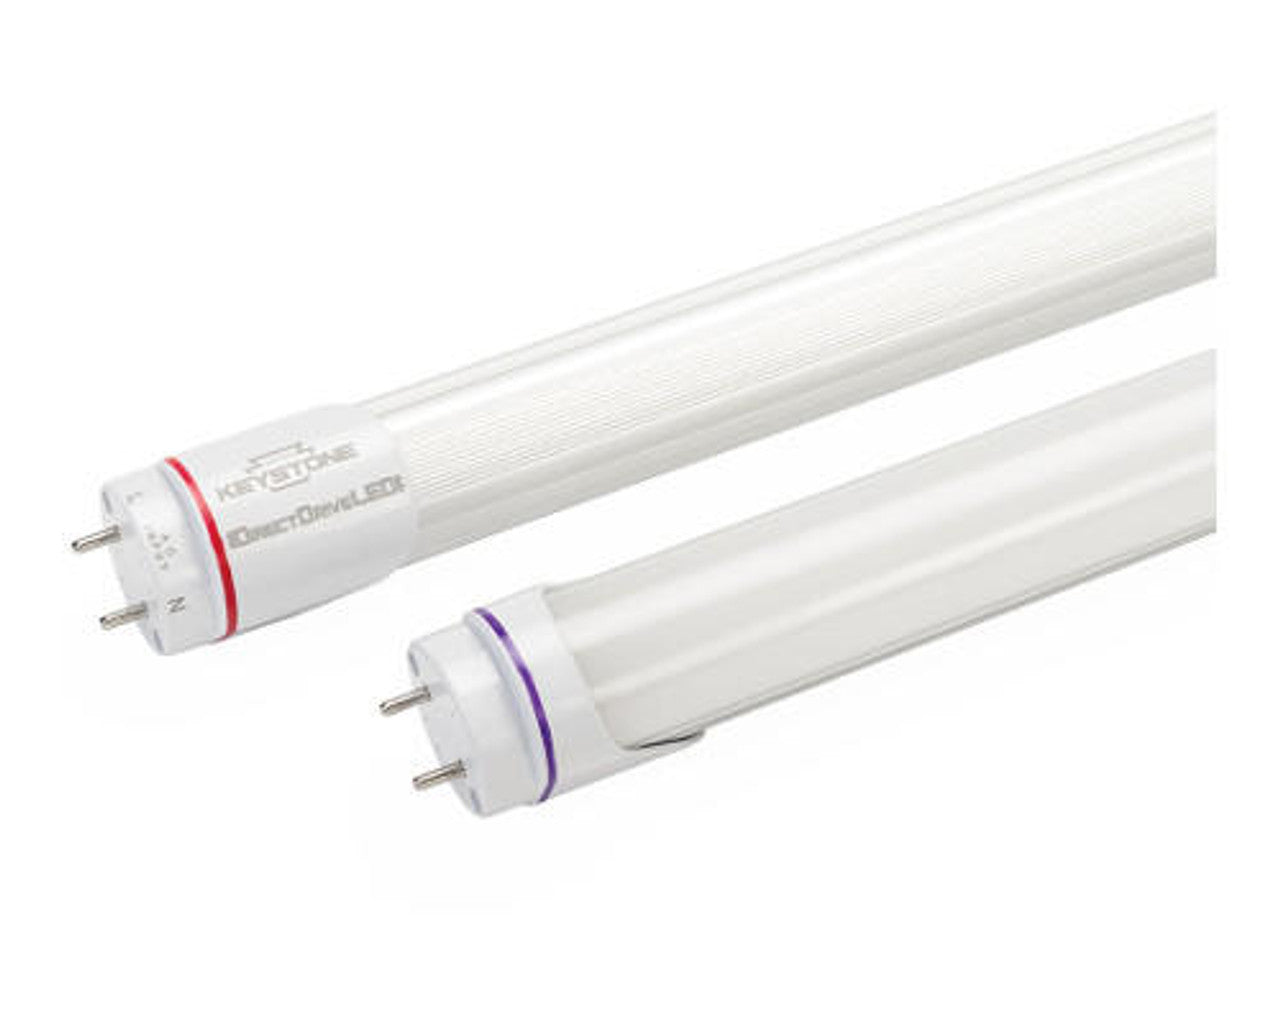 KEYSTONE 20-PACK! LED Light Fixtures 4 ft White KT-LED18T8-48P-840-D-VDIM (New)